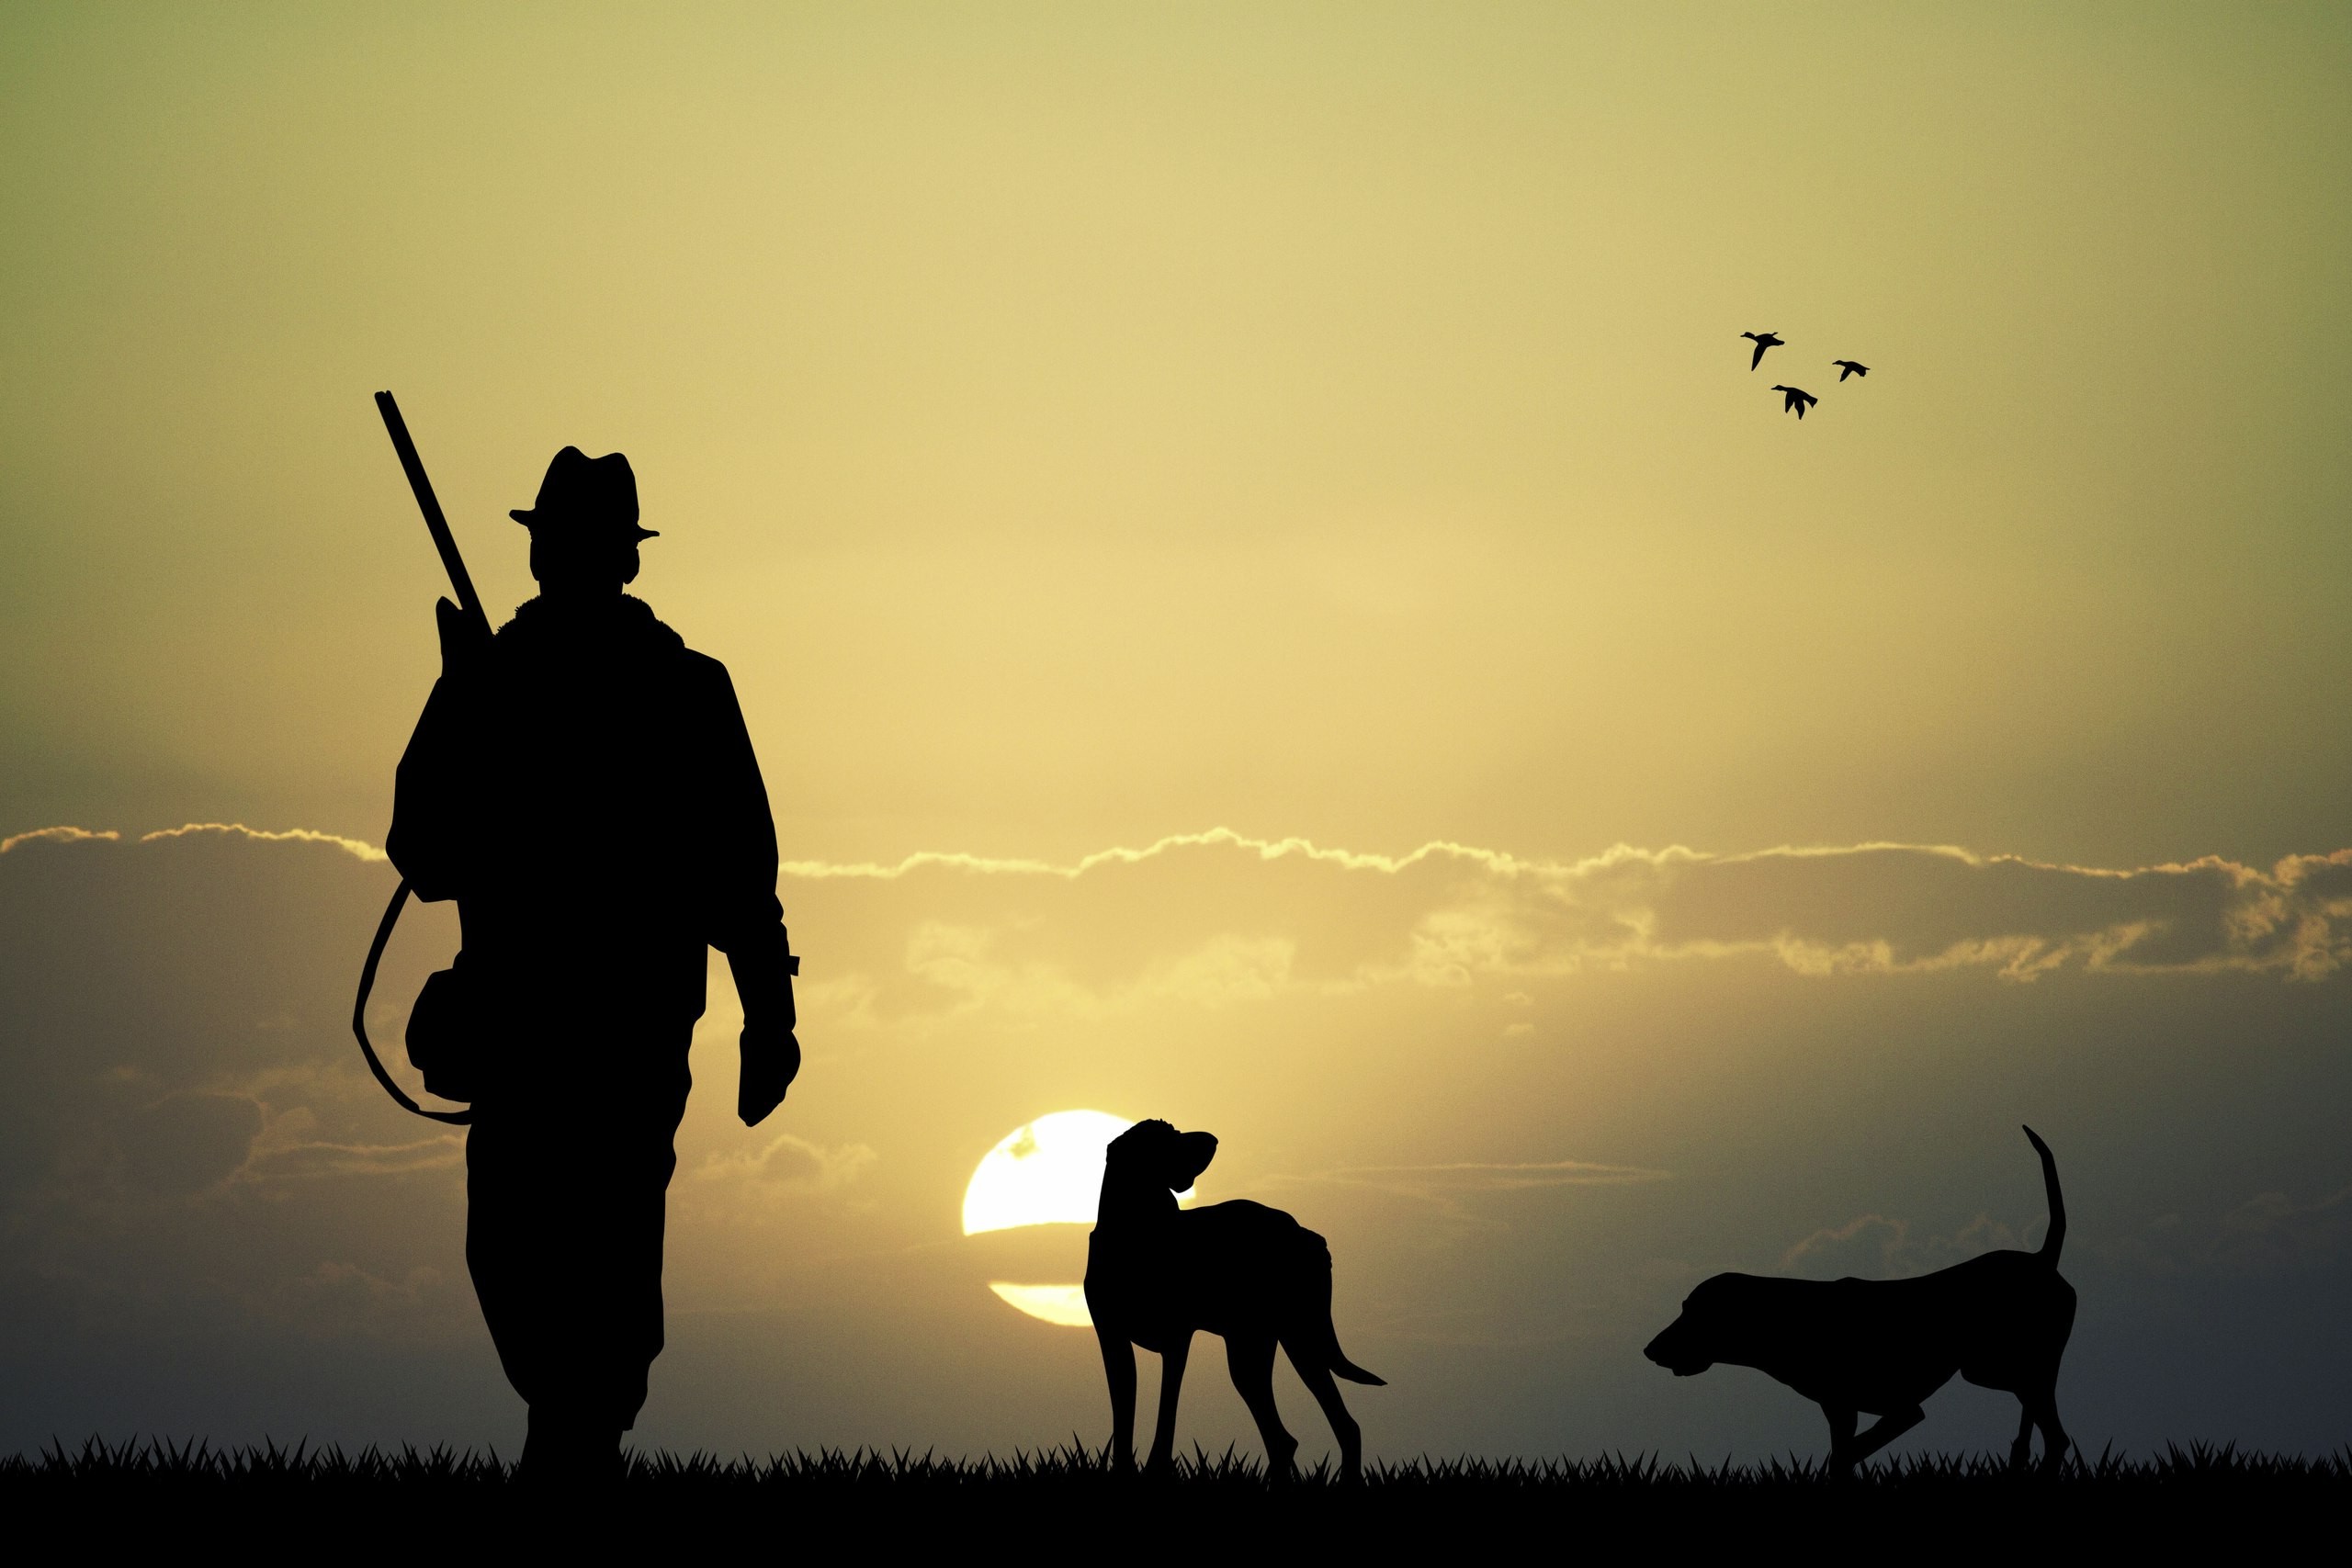 Lov na slikama i videu - Page 6 218850-animals-dog-birds-Sun-men-hunting-gun-rifles